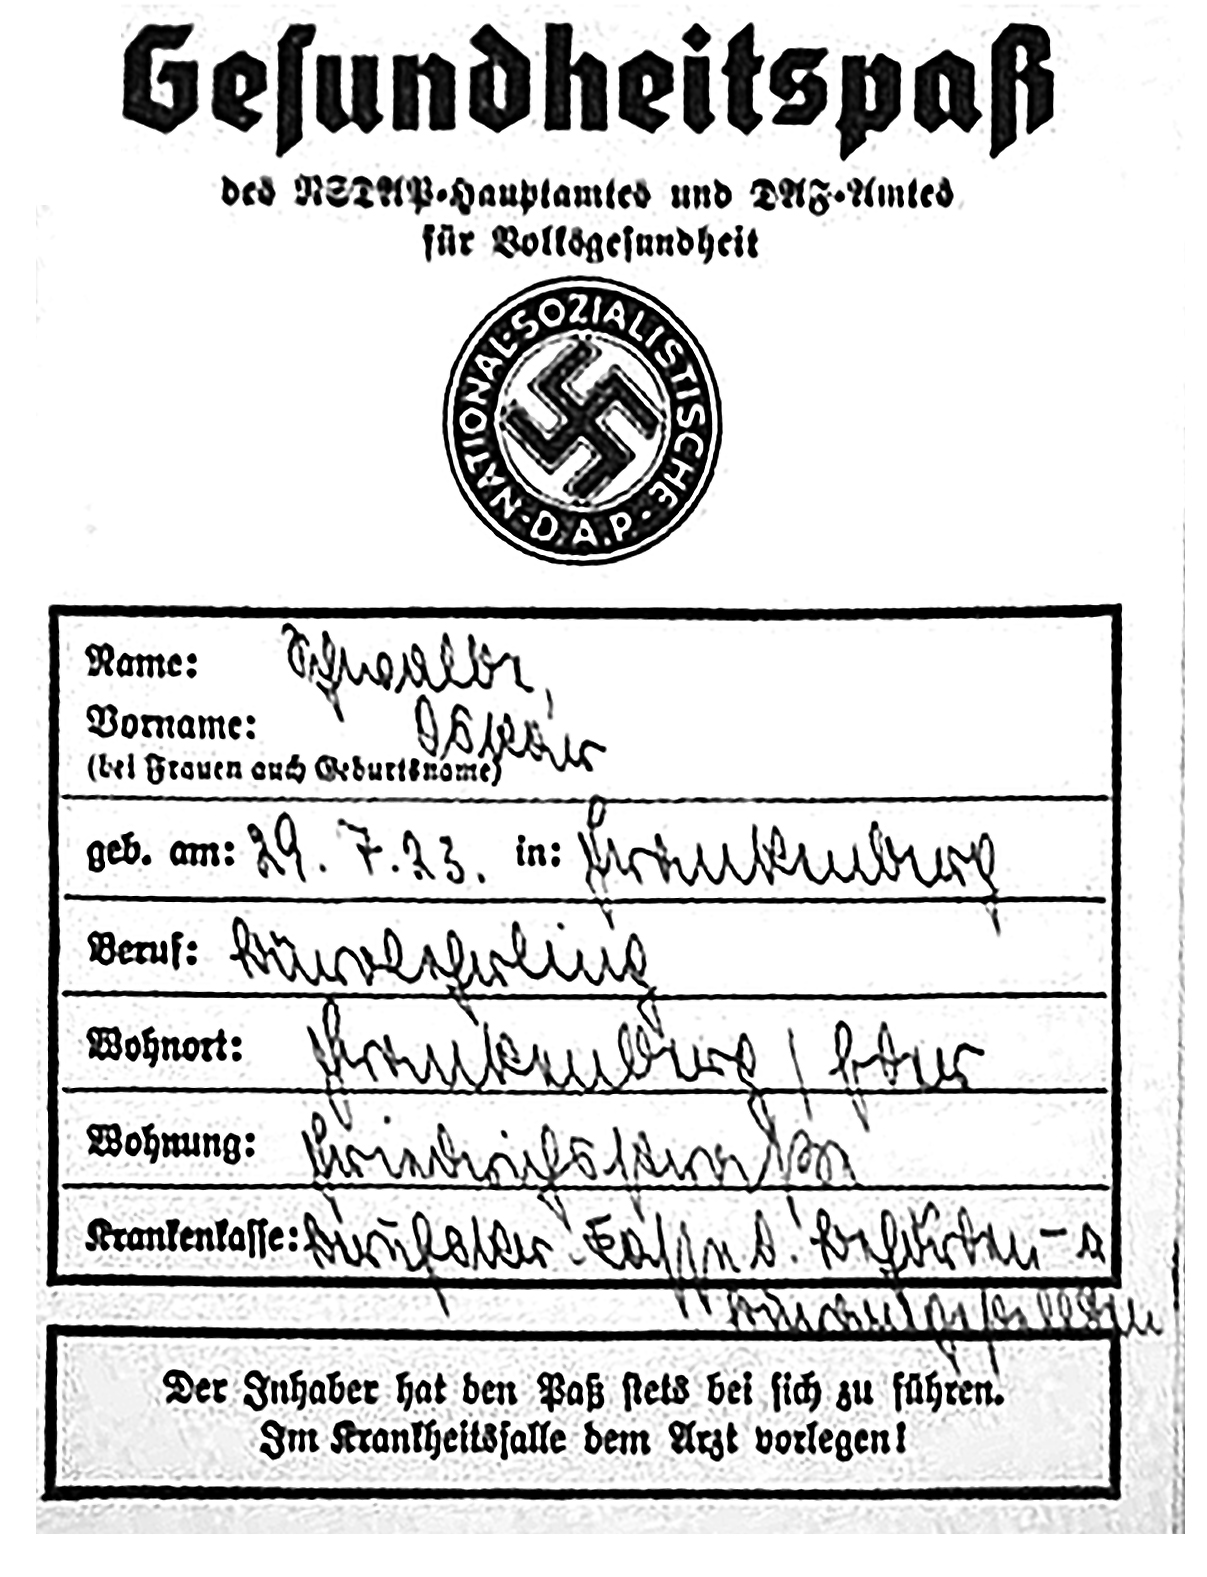 Nazi health passport rectified.jpg